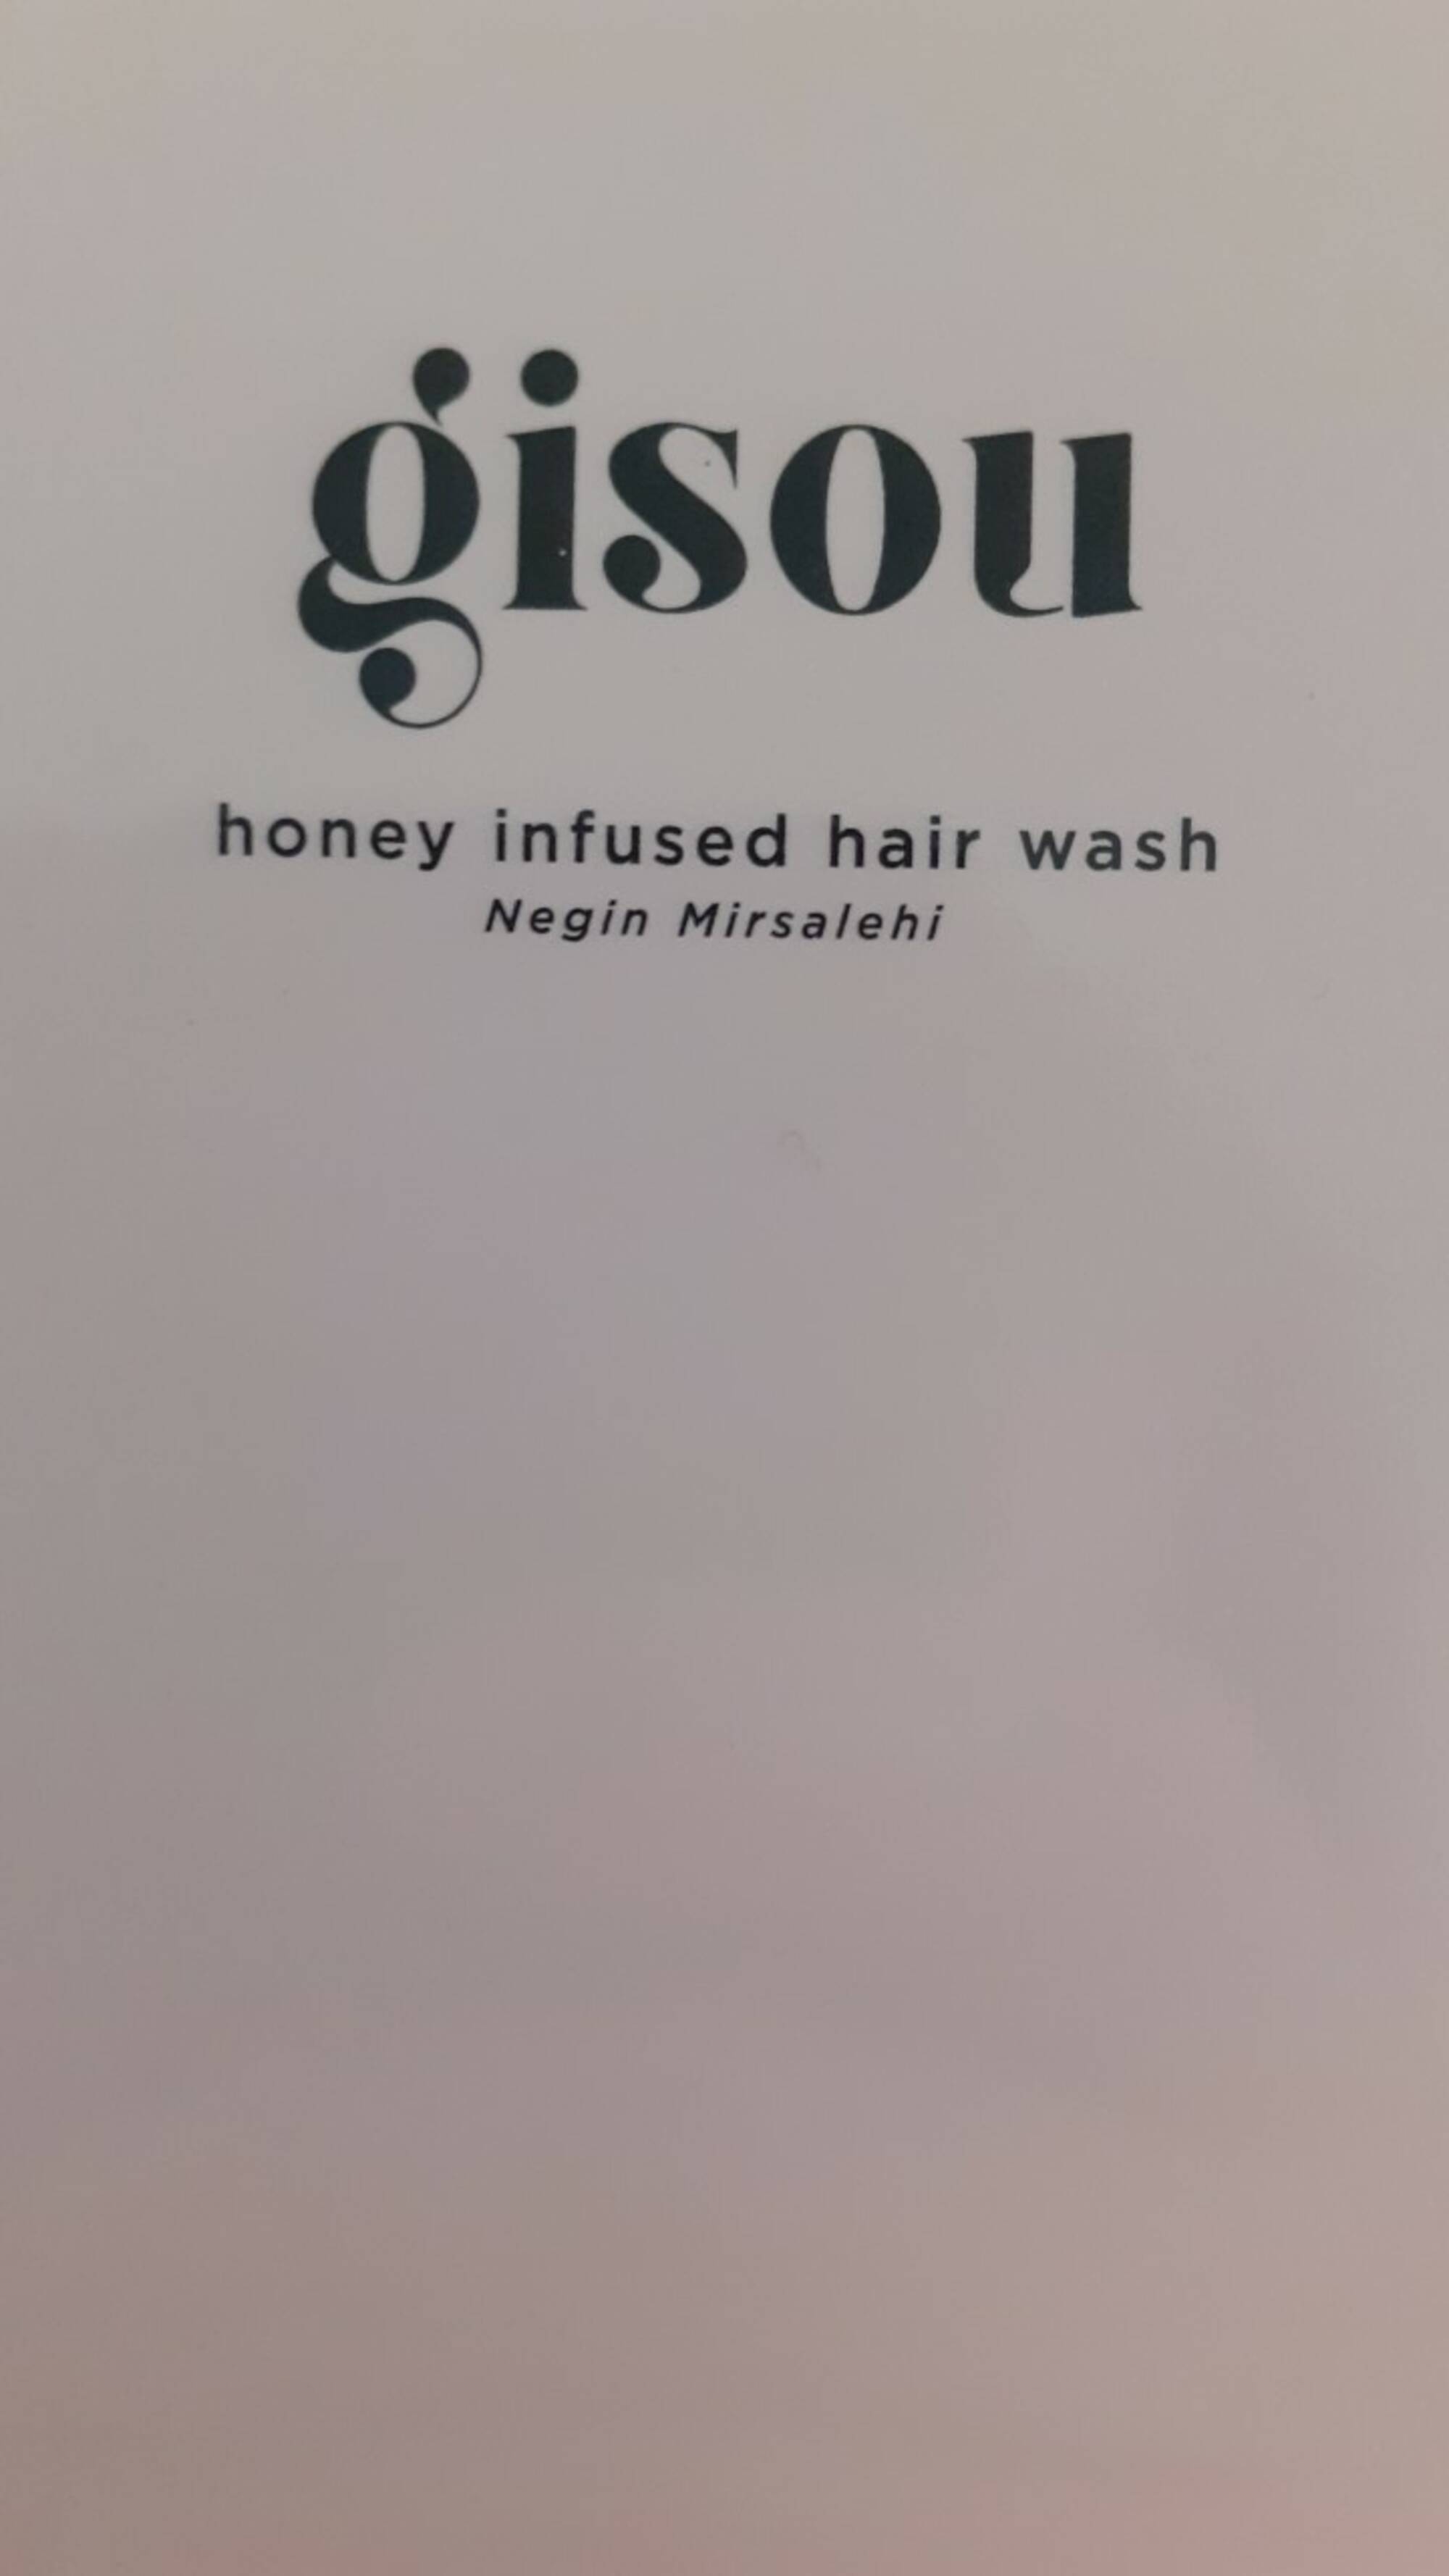 GISOU - Honey infused hair wash